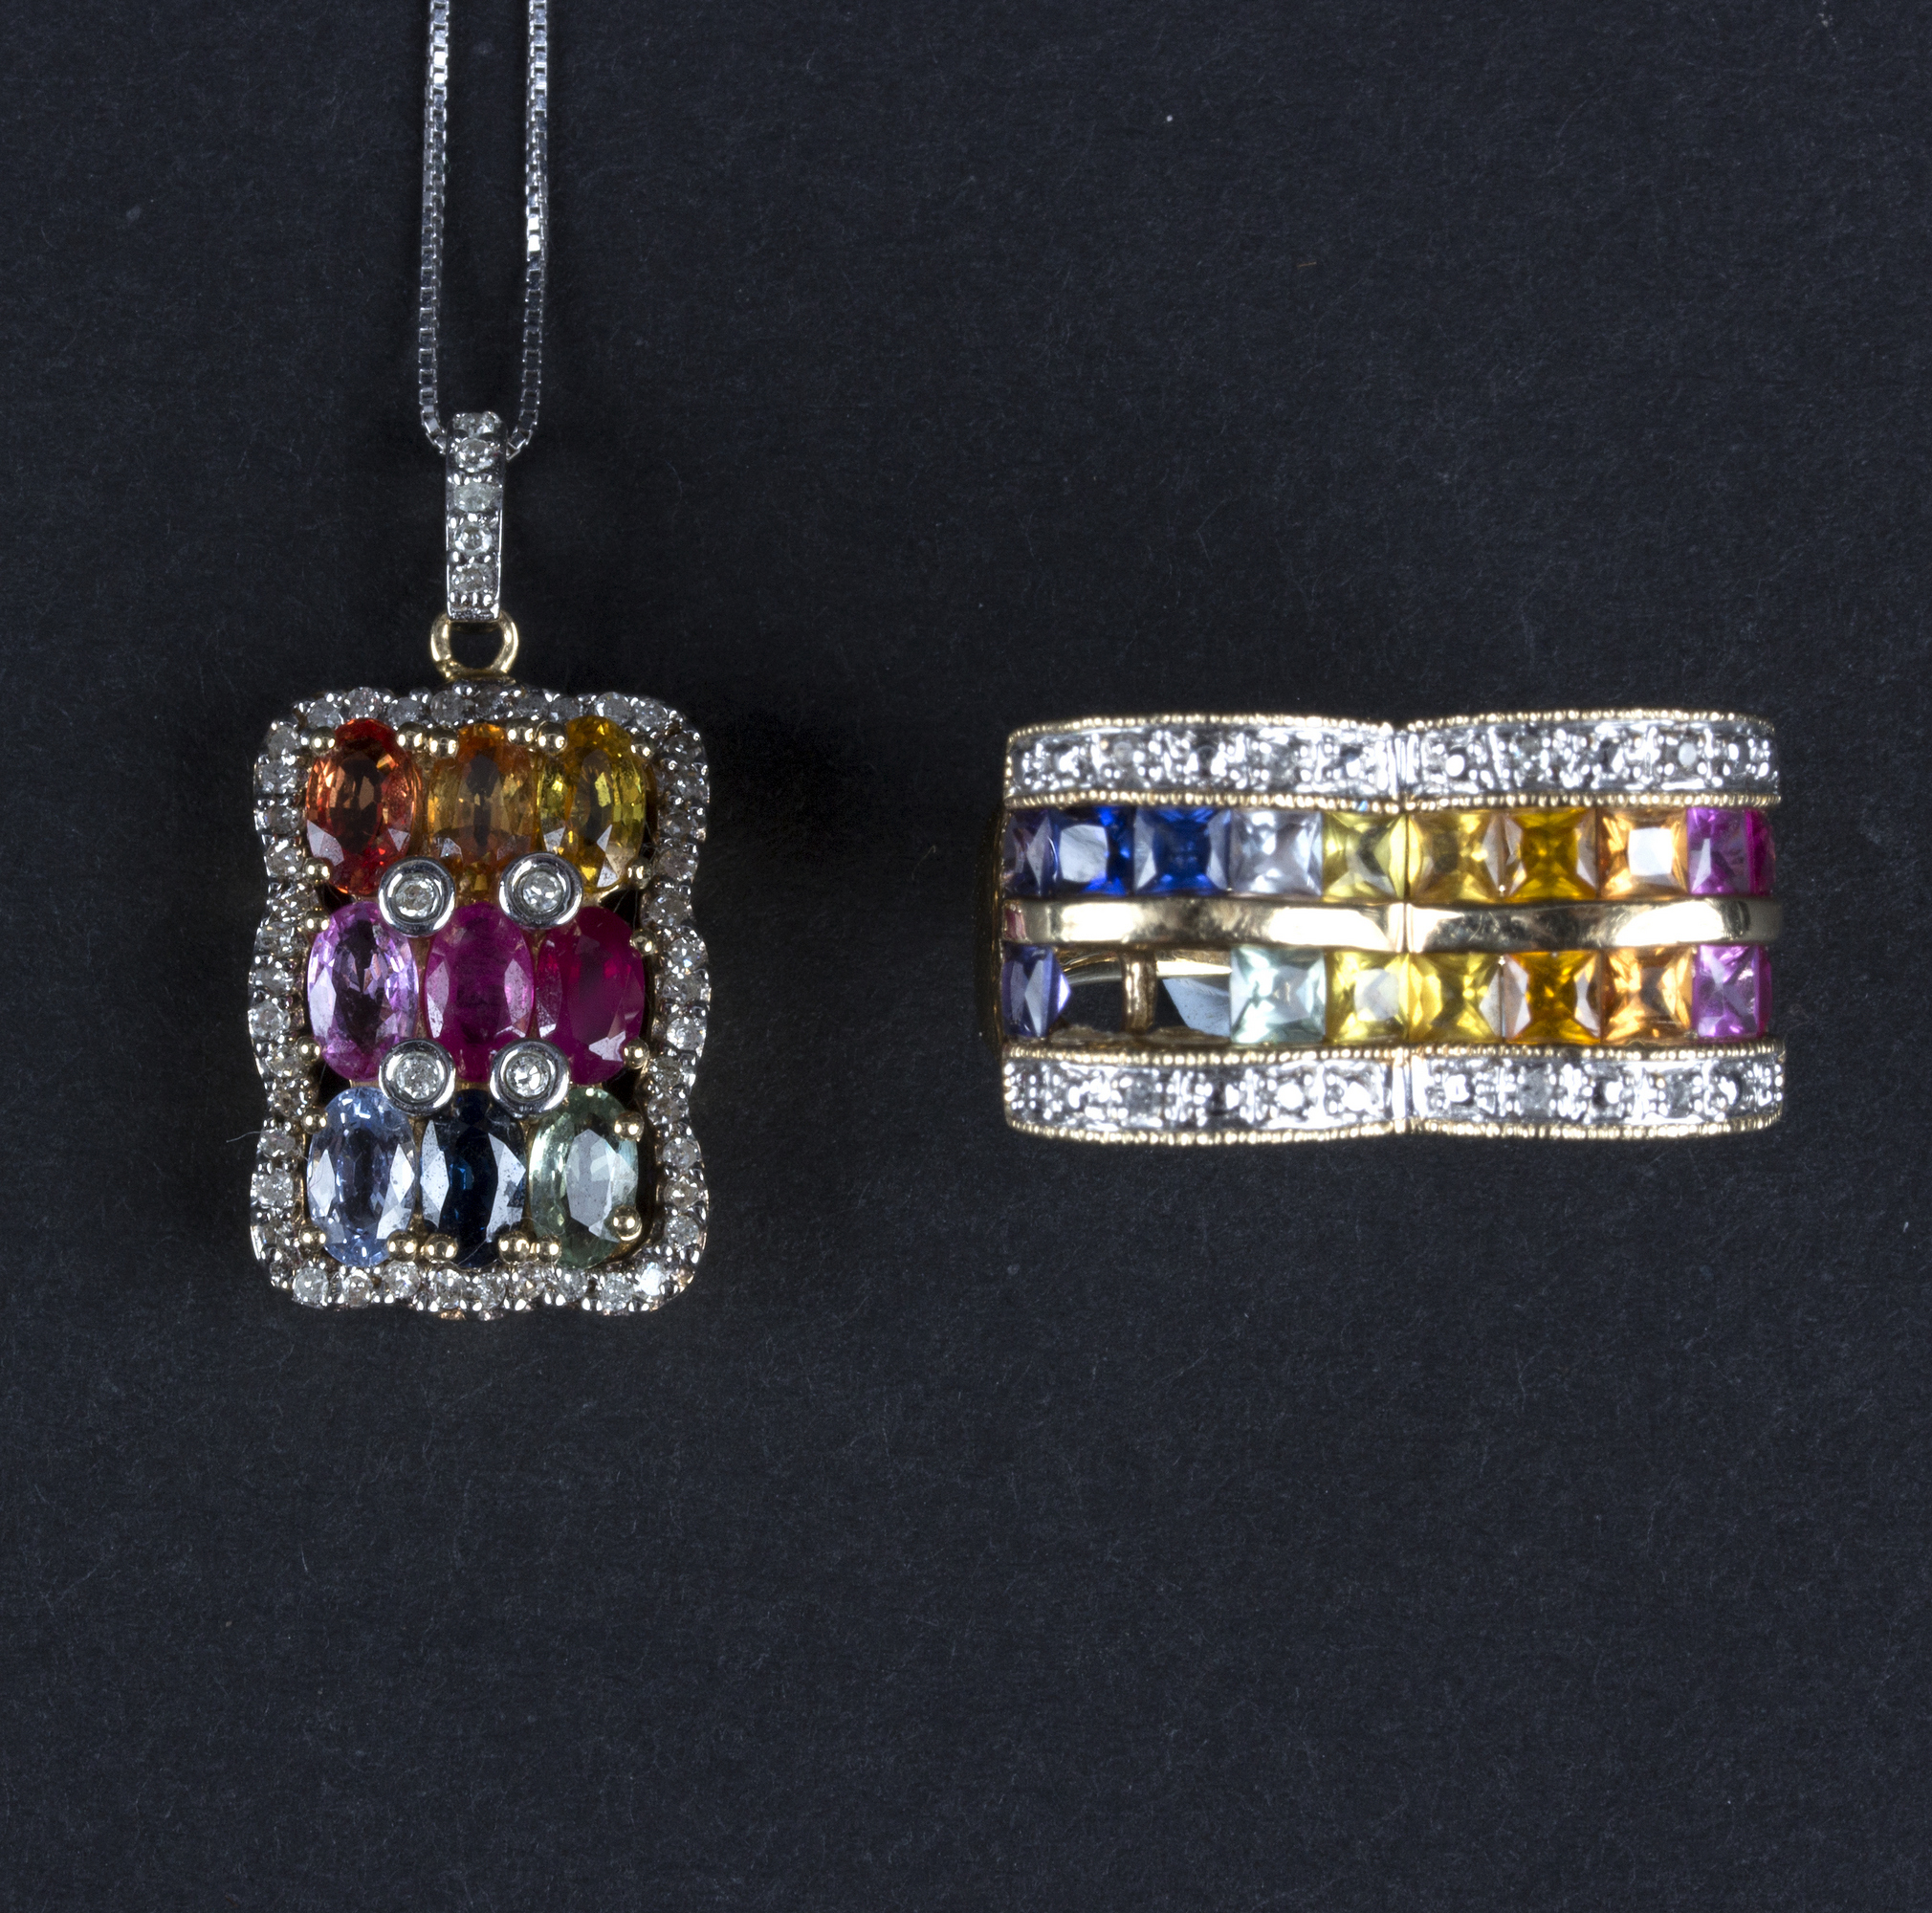 A multi-gem pendant by R Klein,